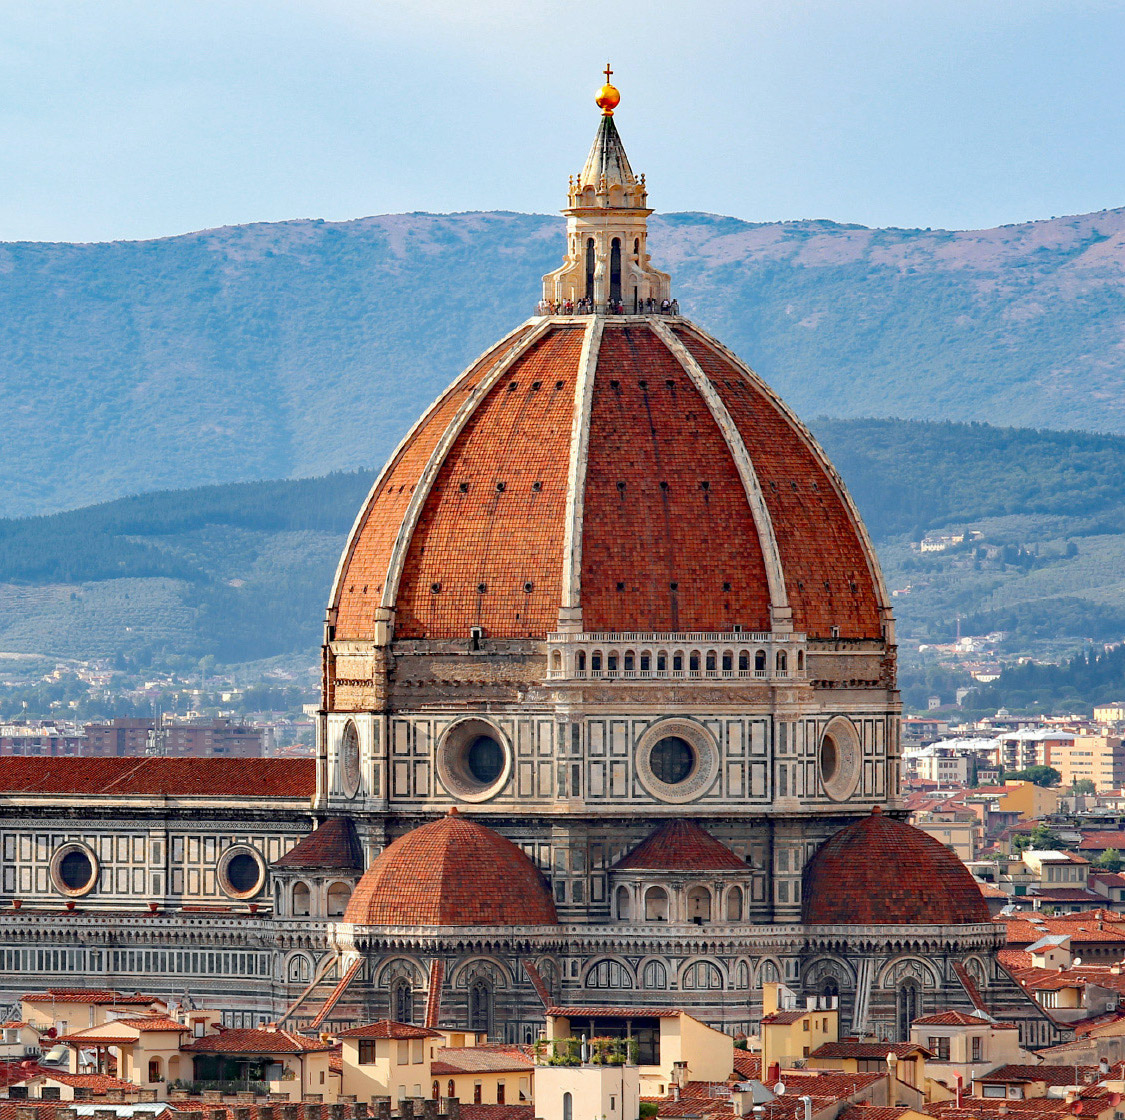 Dôme de Brunelleschi